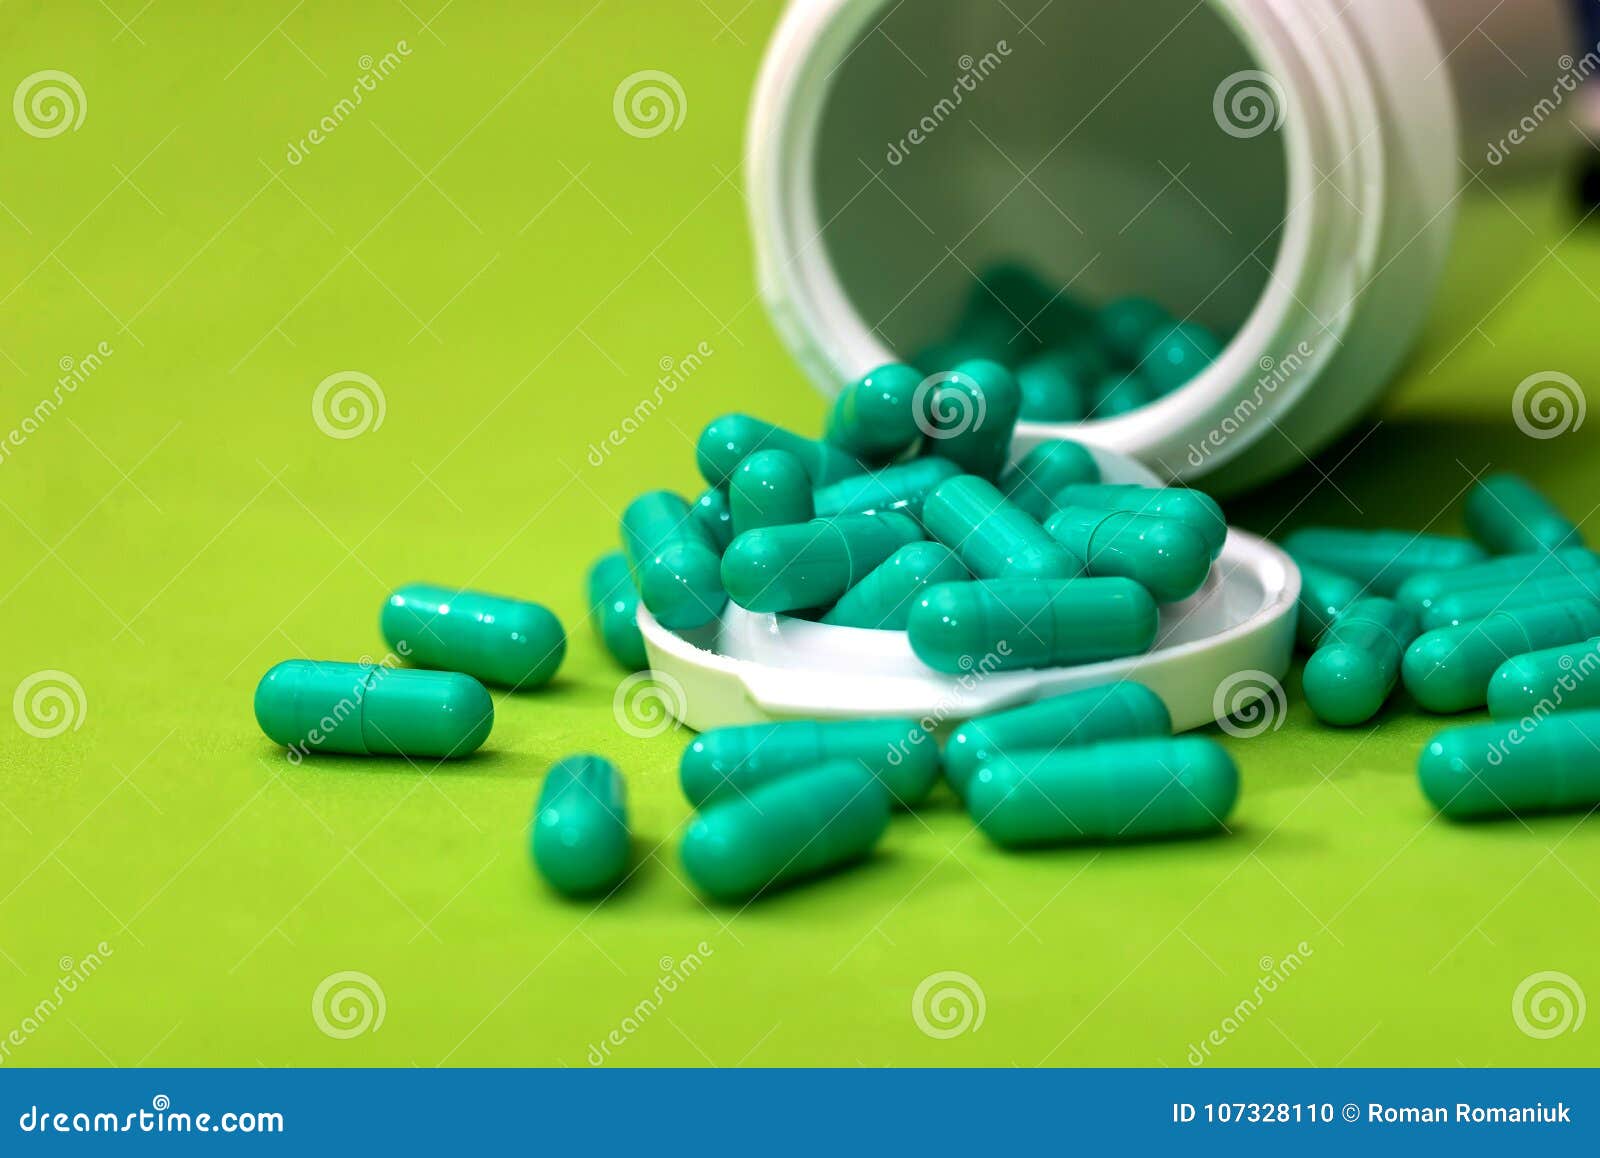 Зеленые антибиотики. Зеленые капсулы. Таблетки в зеленой оболочке. Обезболивающие зеленые капсулы. Таблетки зеленого цвета.